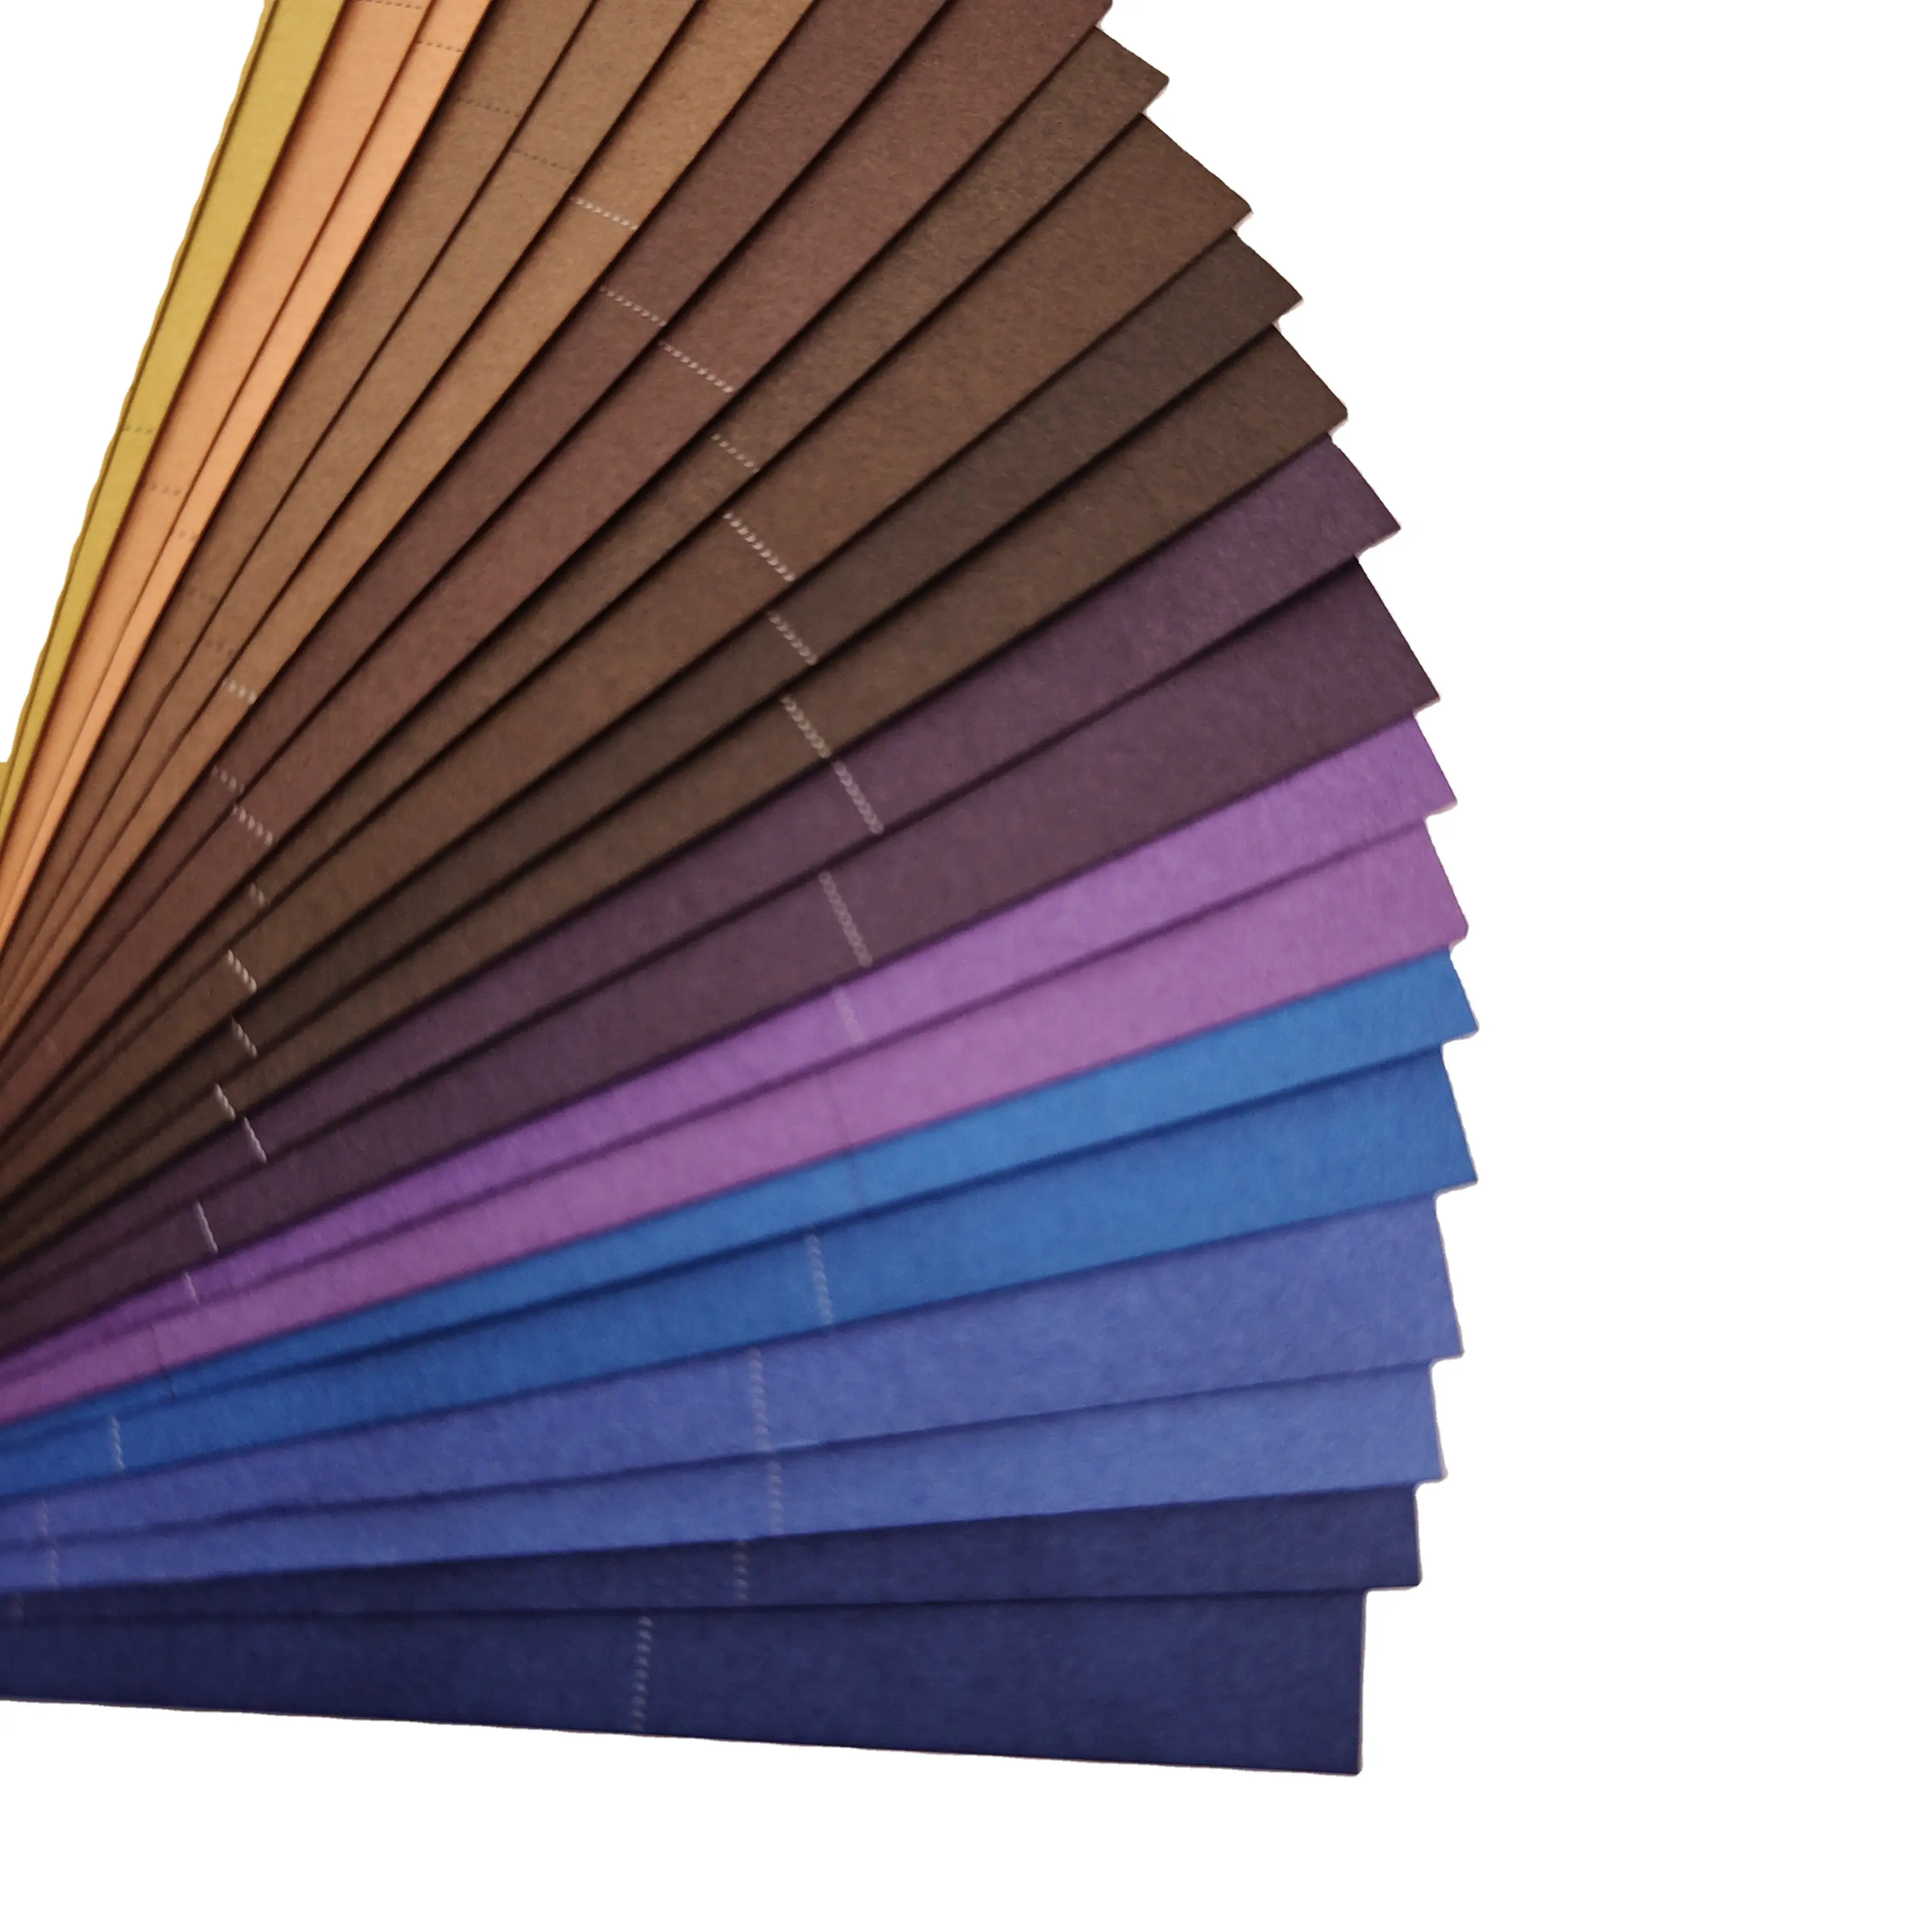 Papel colorido de polpa de madeira de alta qualidade é ecológico, e papel de embrulho profissional de 118g e 256g pode ser reciclado